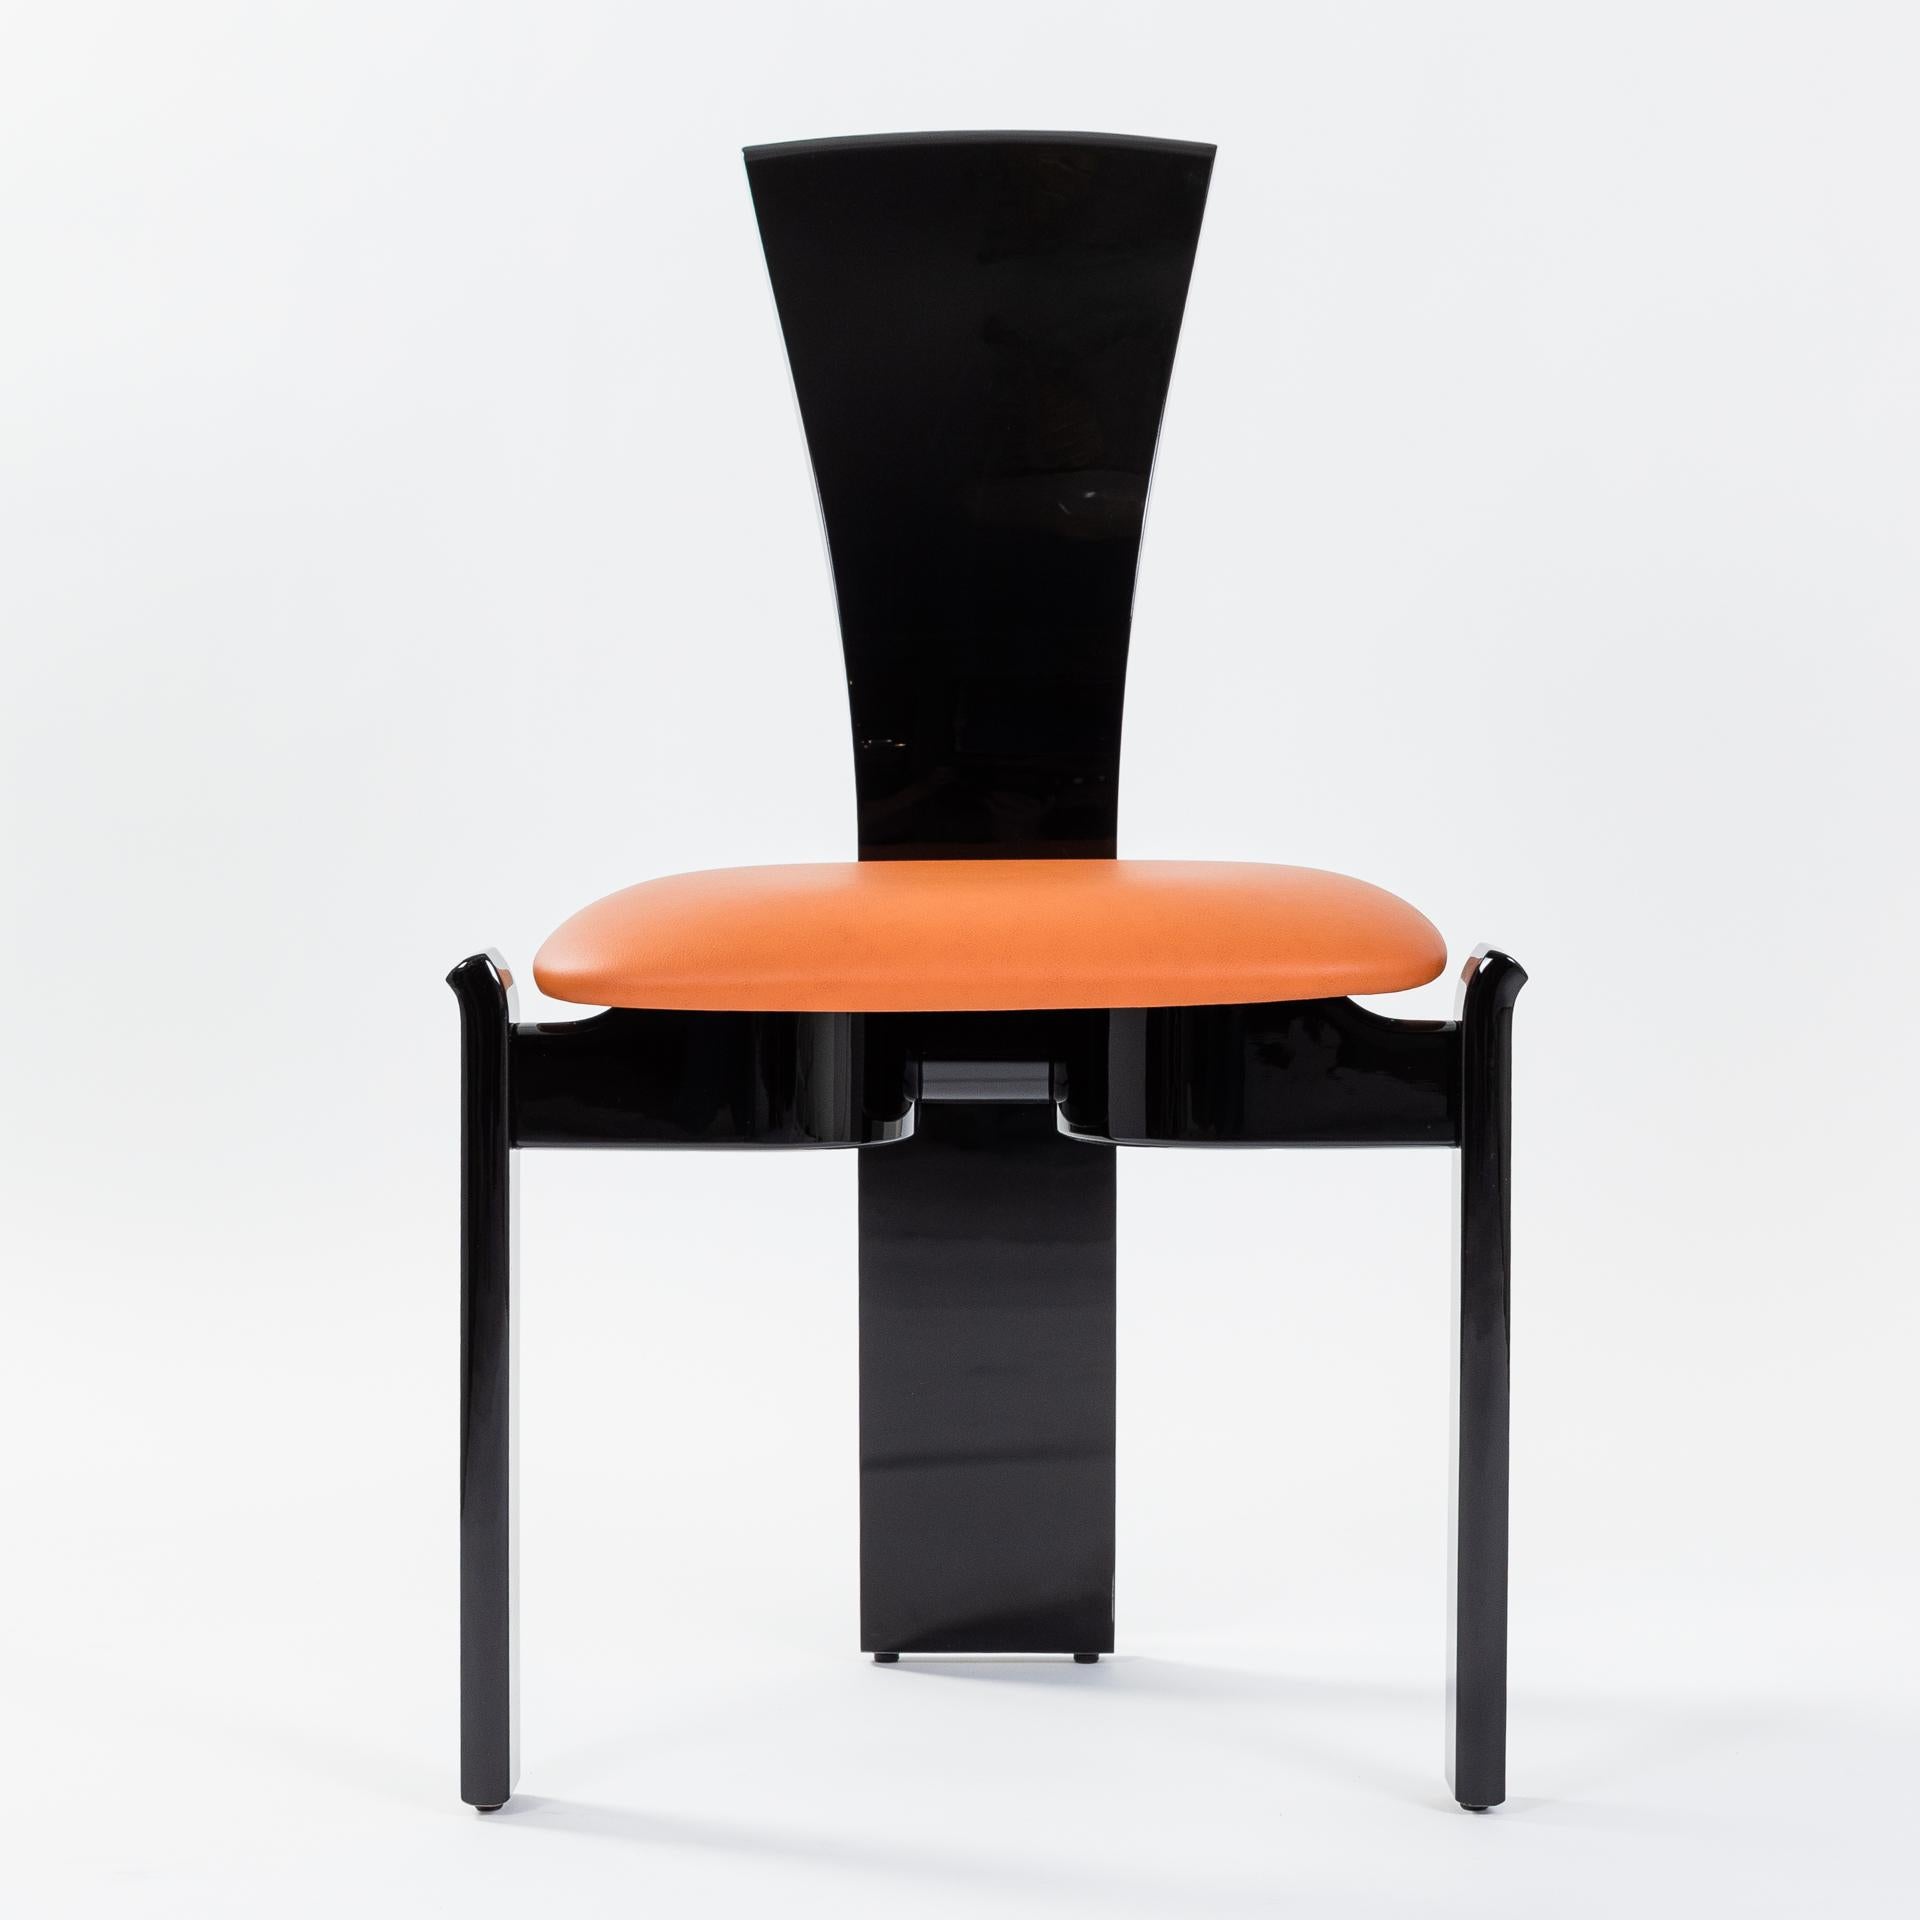 6 Stühle in einem fantastischen, prägnanten Design und klaren Linien, die dem französischen Architekten und Designer Jean Michel Wilmotte zugeschrieben werden.
Die sich verjüngende Rückenlehne mit ihrer ergonomischen Form sorgt für einen hohen